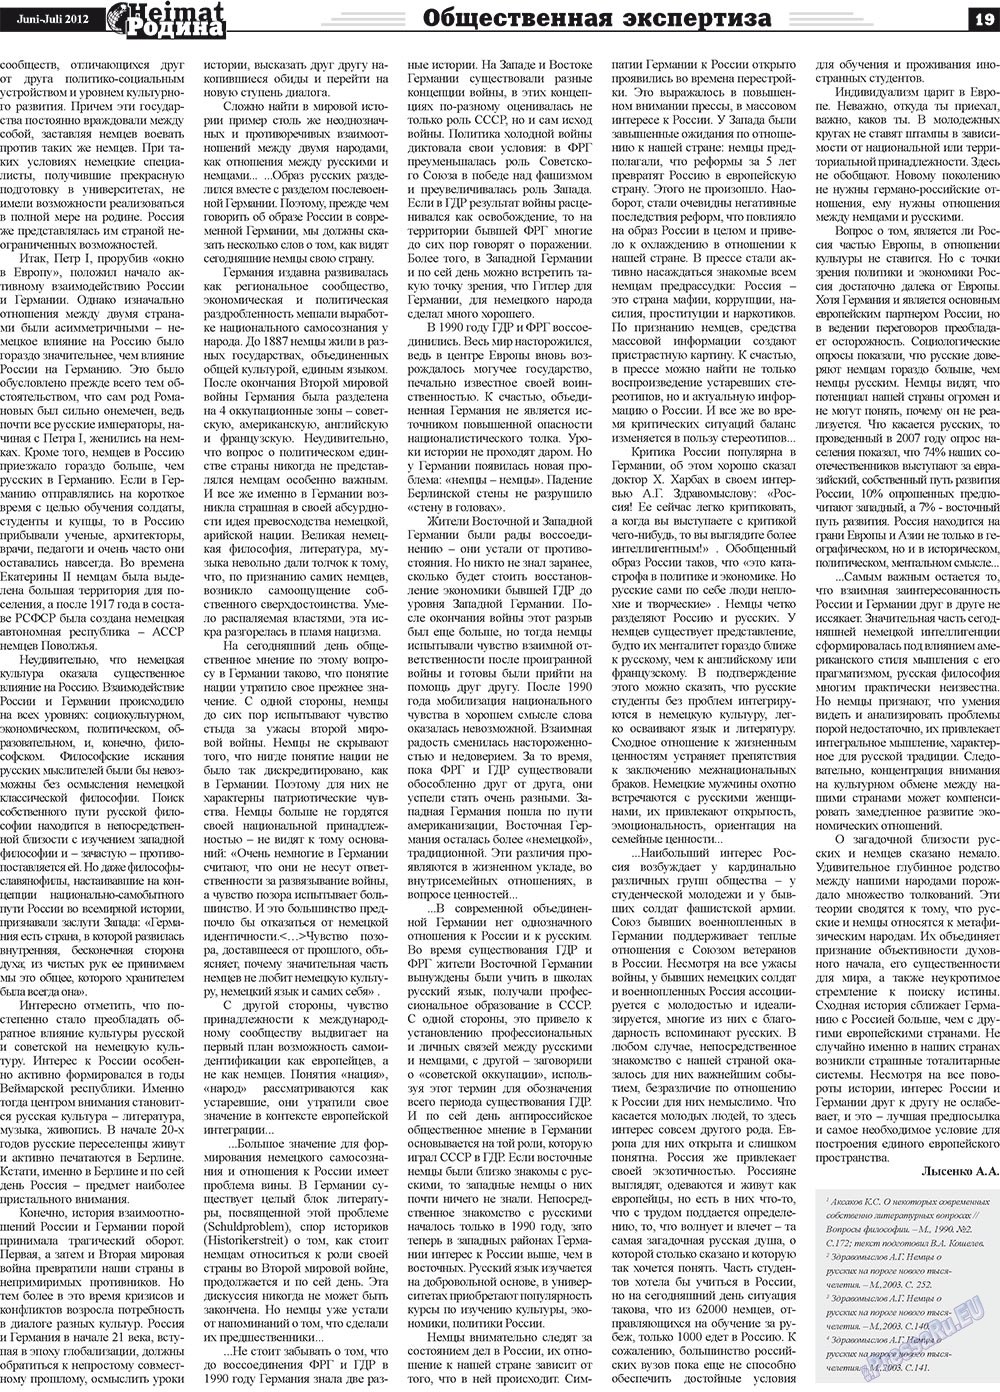 Heimat-Родина (газета). 2012 год, номер 5, стр. 19